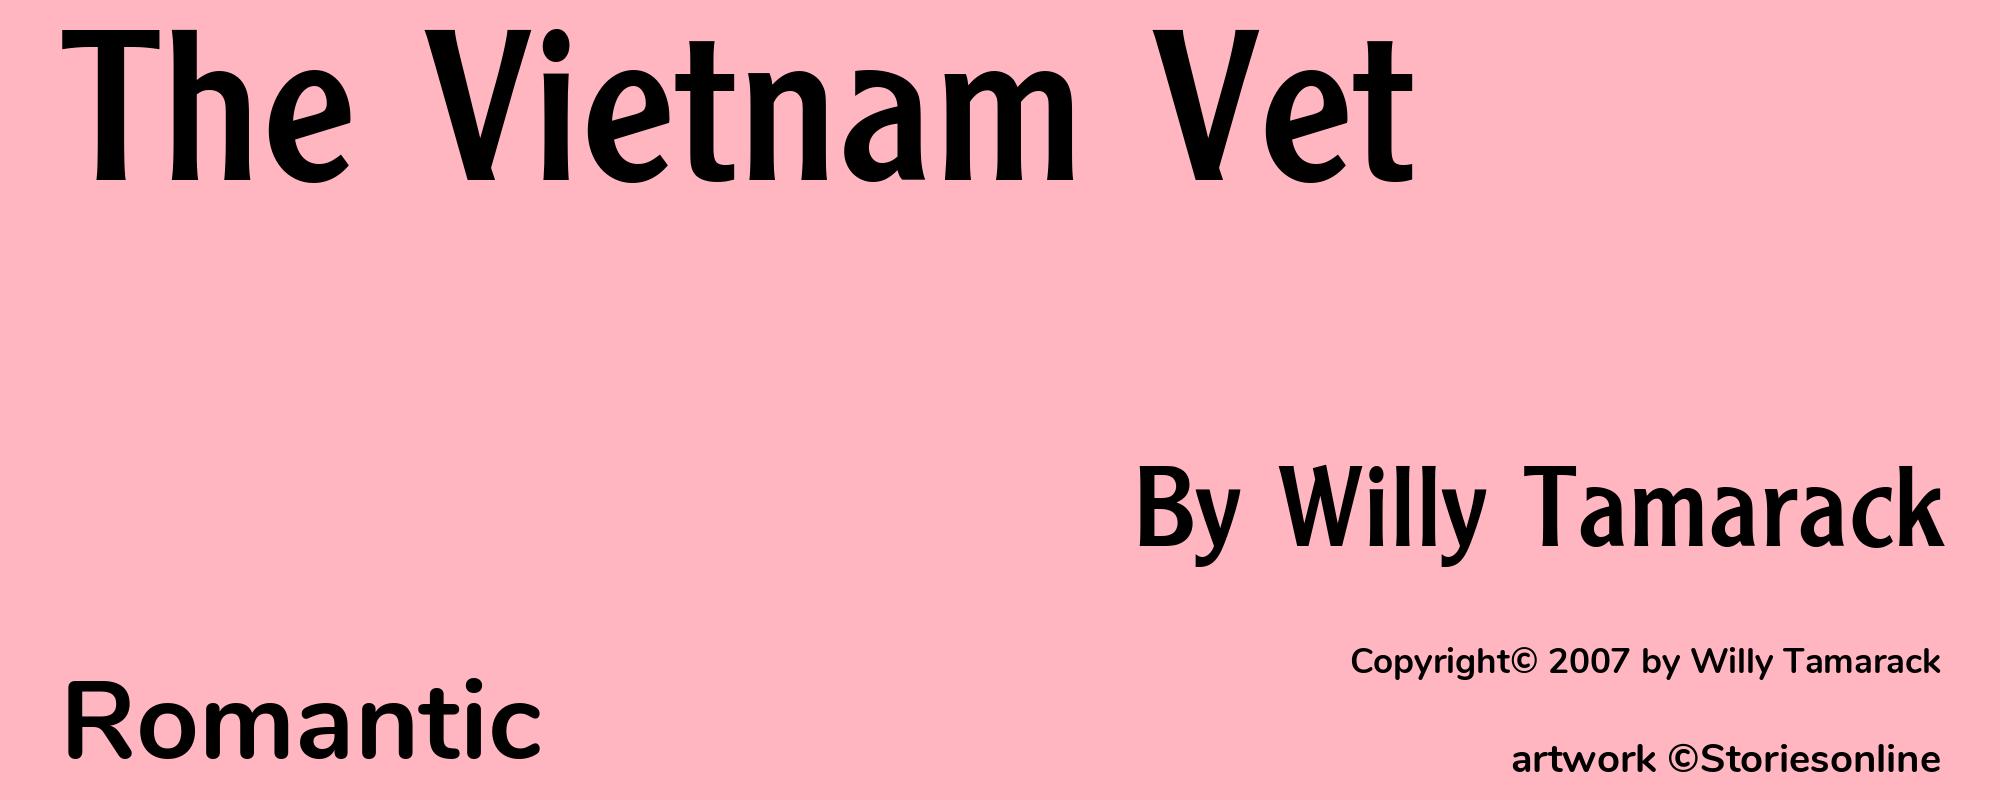 The Vietnam Vet - Cover